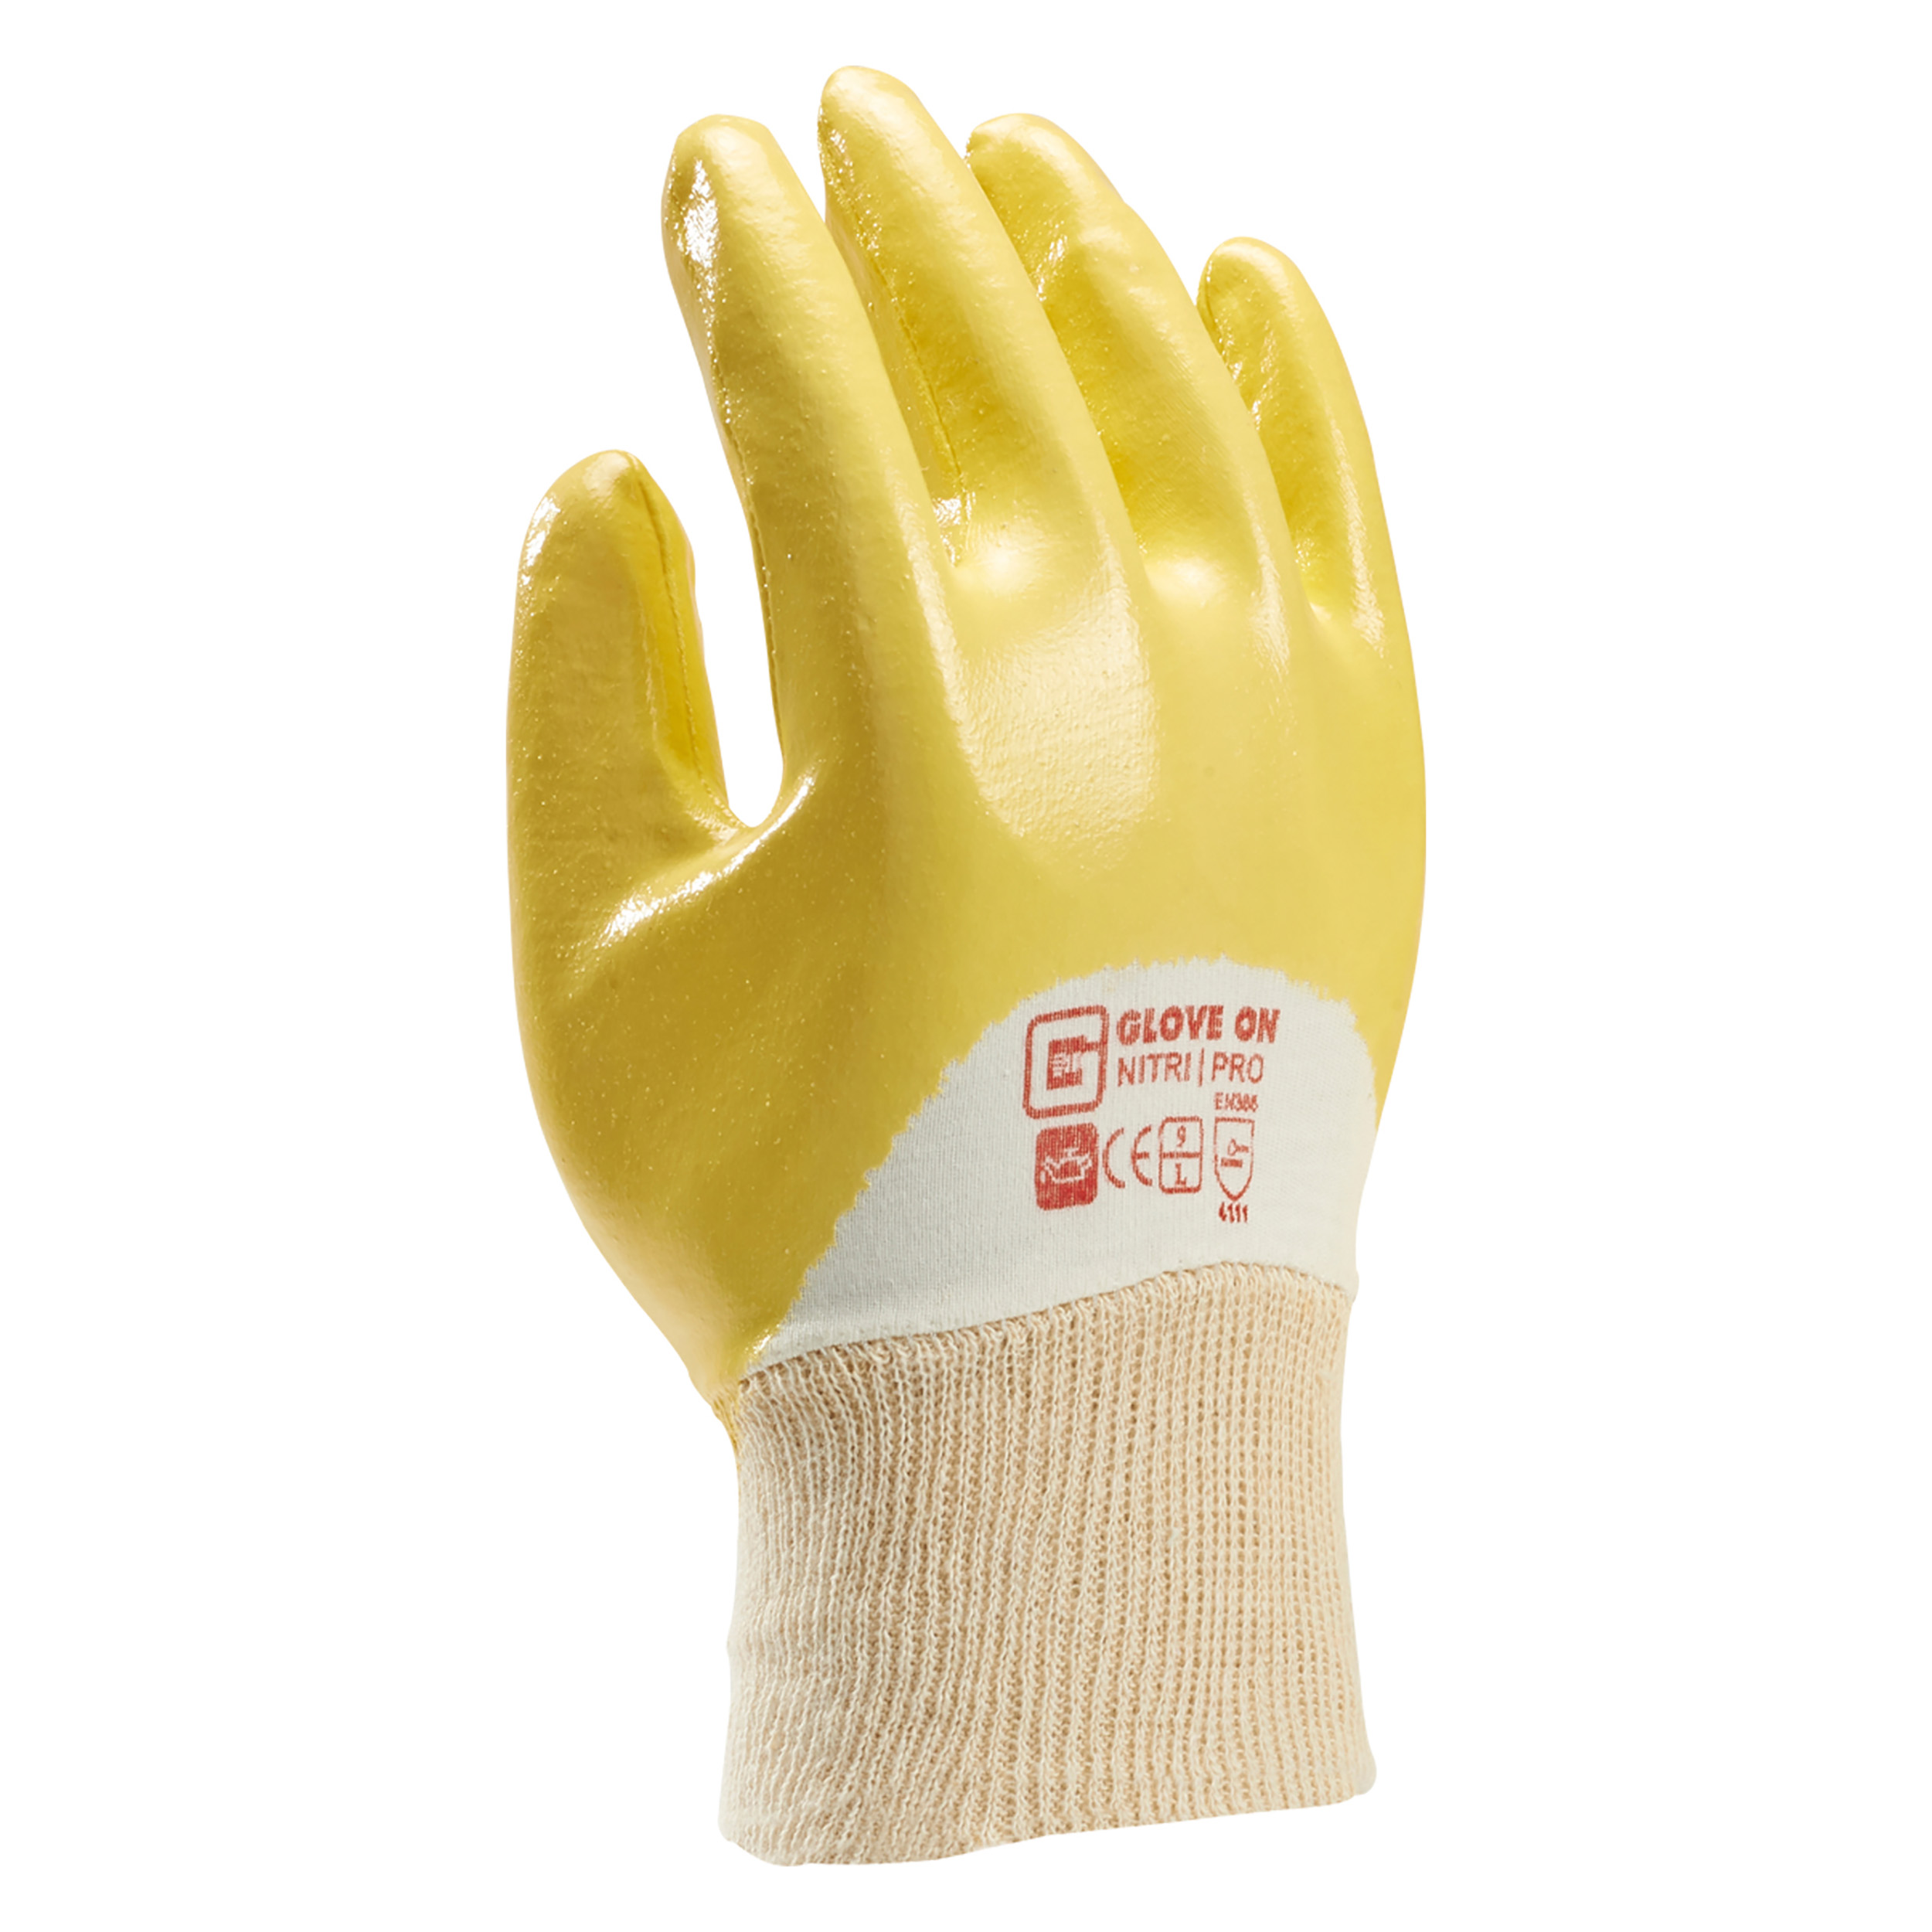 21.080.34 Glove On Nitri werkhandschoen nitri pro - XL